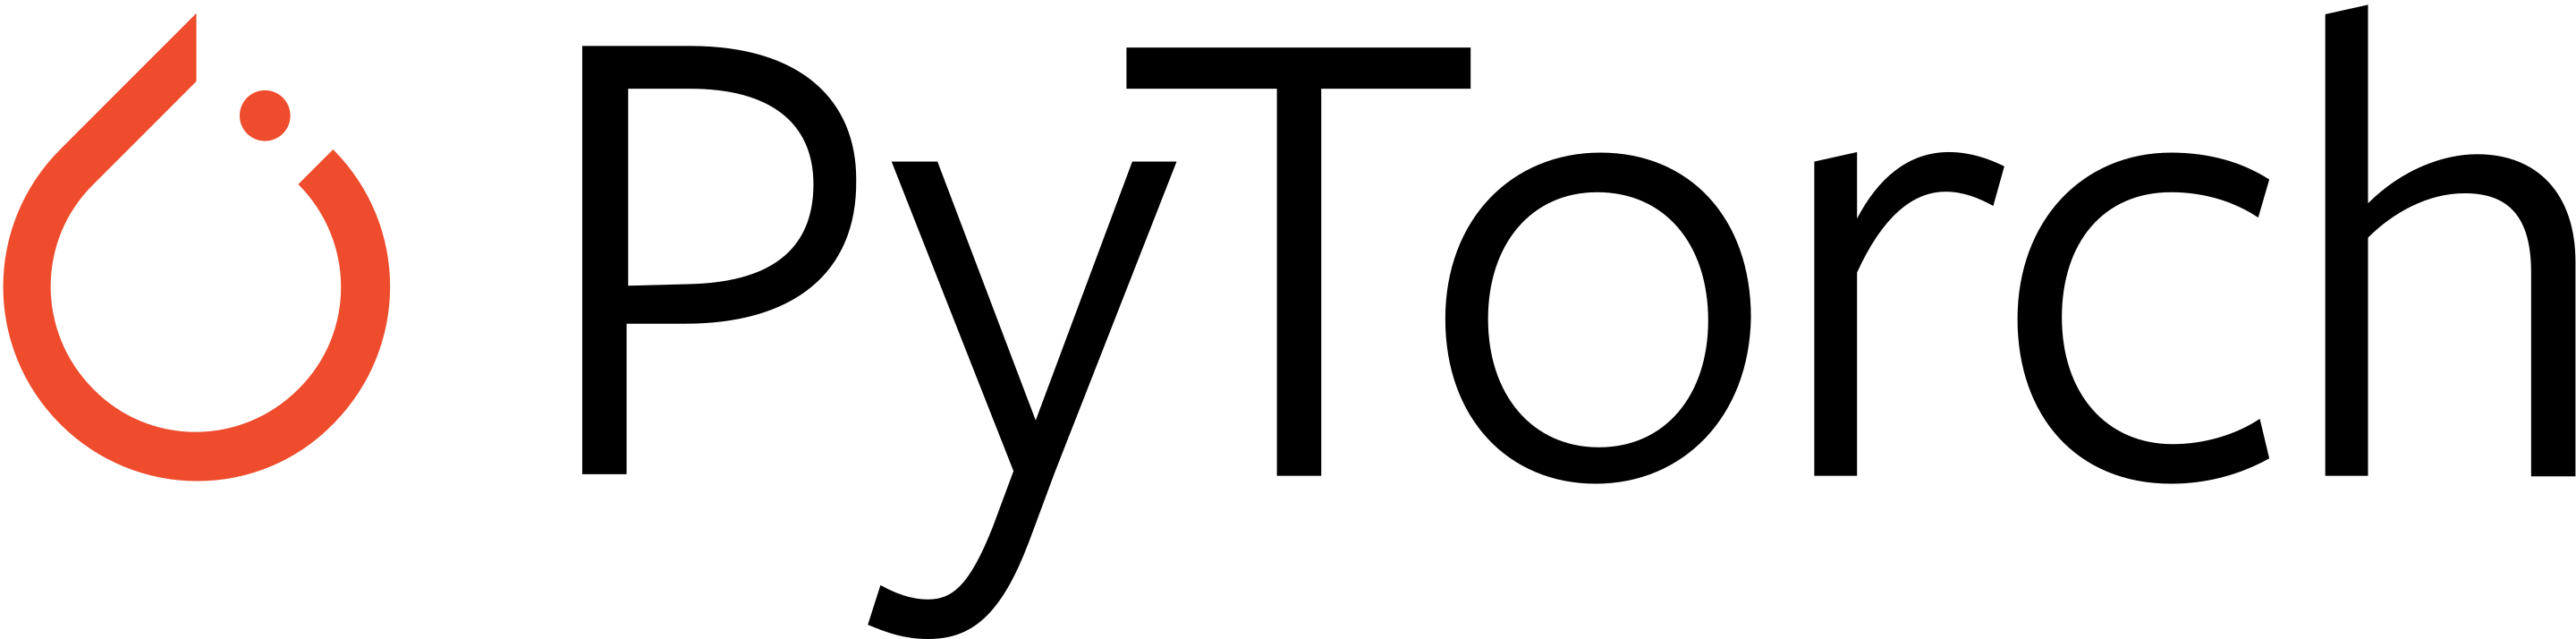 PYTORCH. PYTORCH logo. PYTORCH icon. PYTORCH logo PNG. Py torch